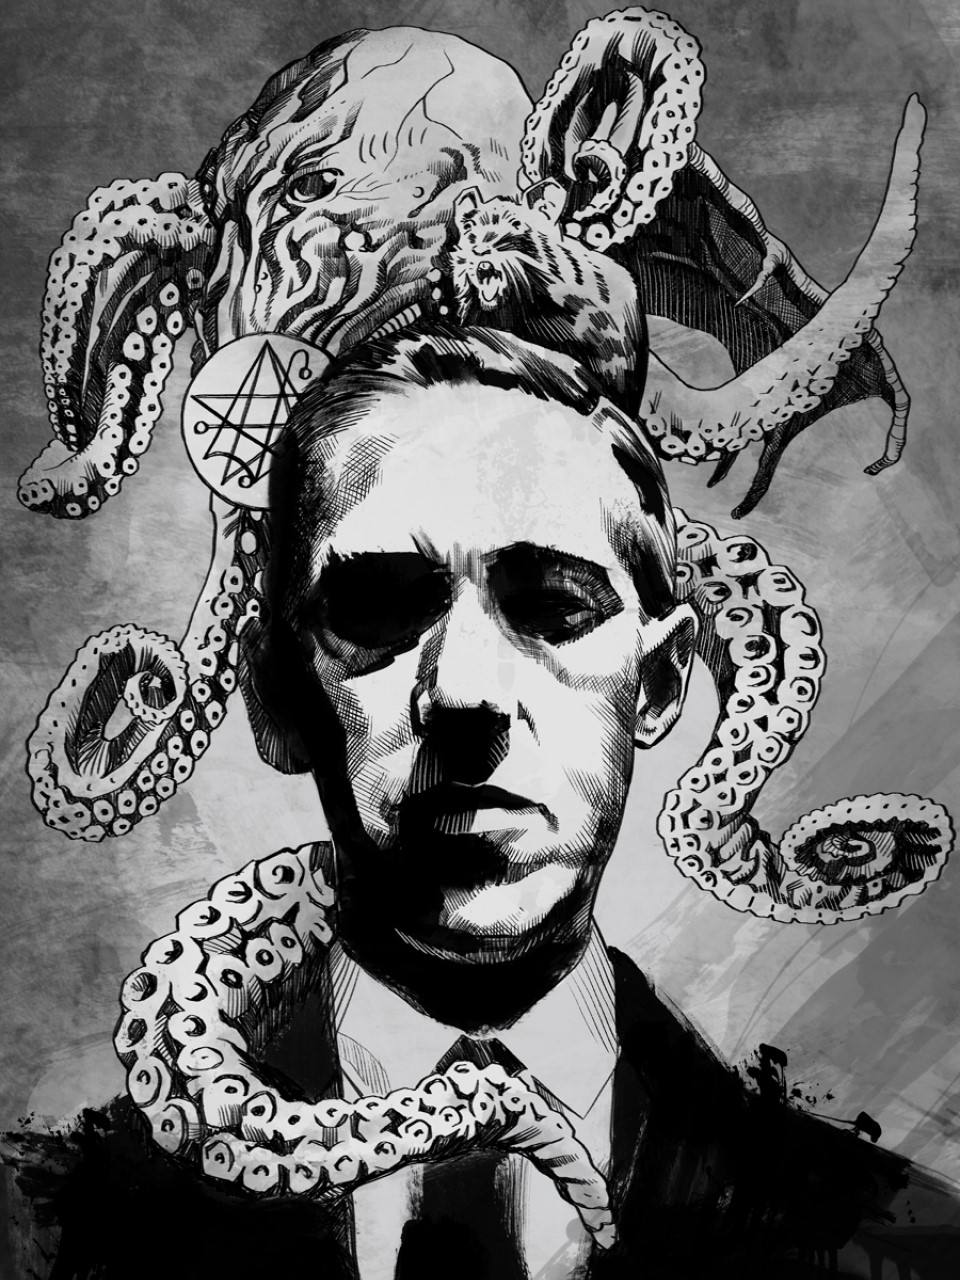 (Ảnh minh họa: Chân dung tác giả H. P Lovecraft)